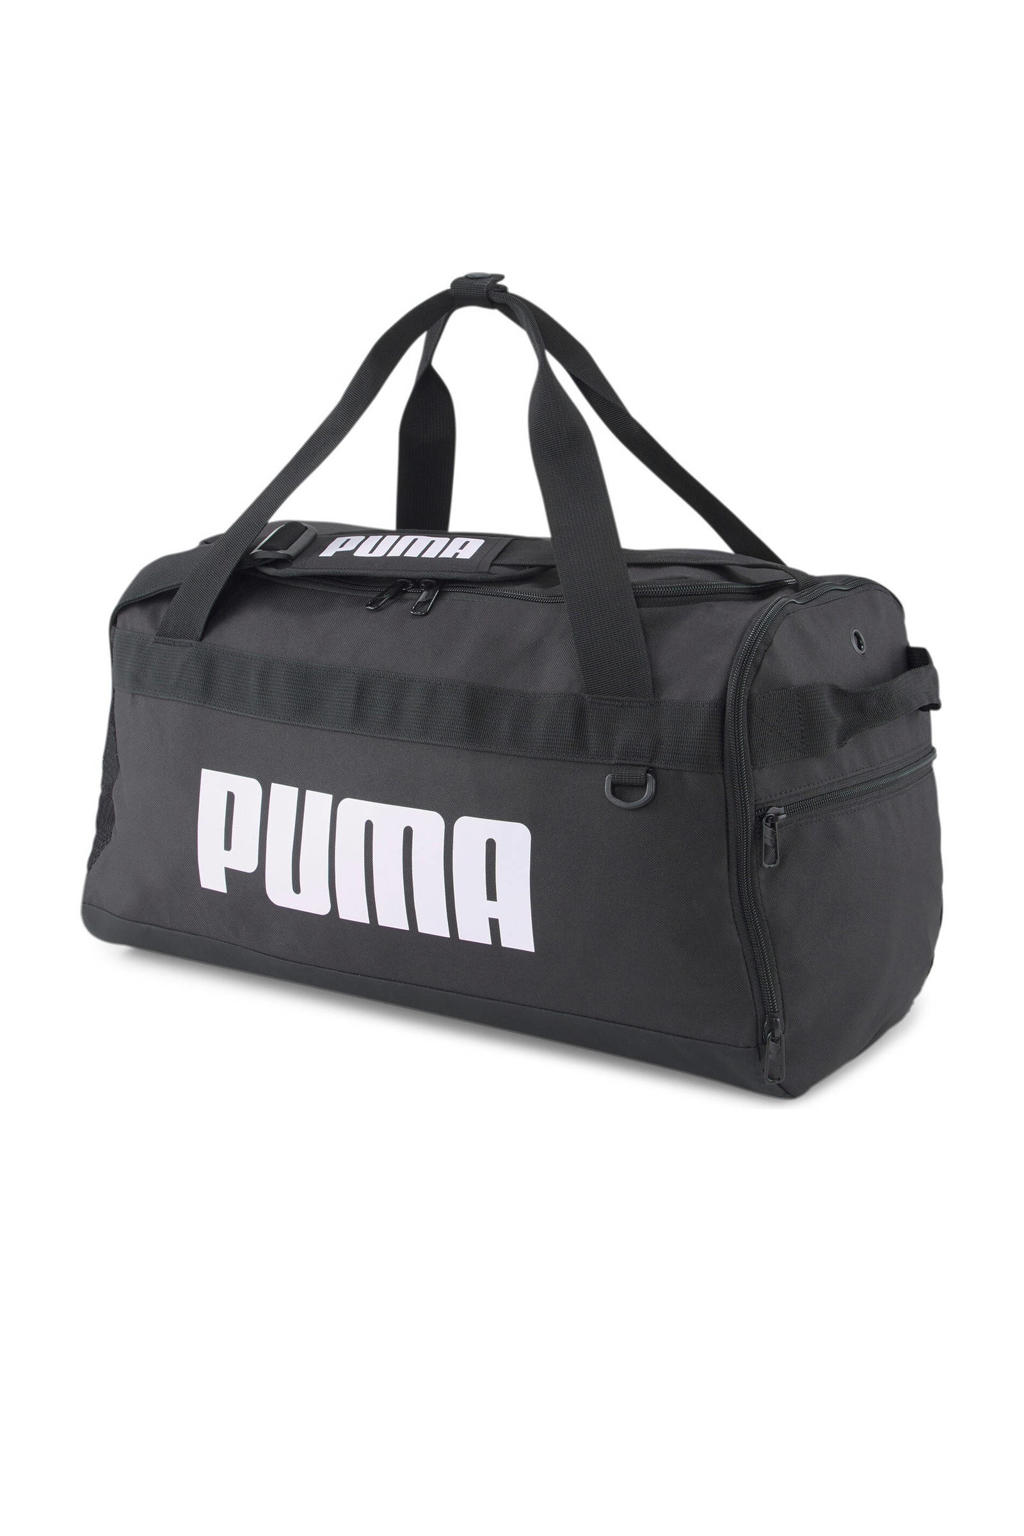 Puma   sporttas Challanger Duffel S 35L zwart/wit